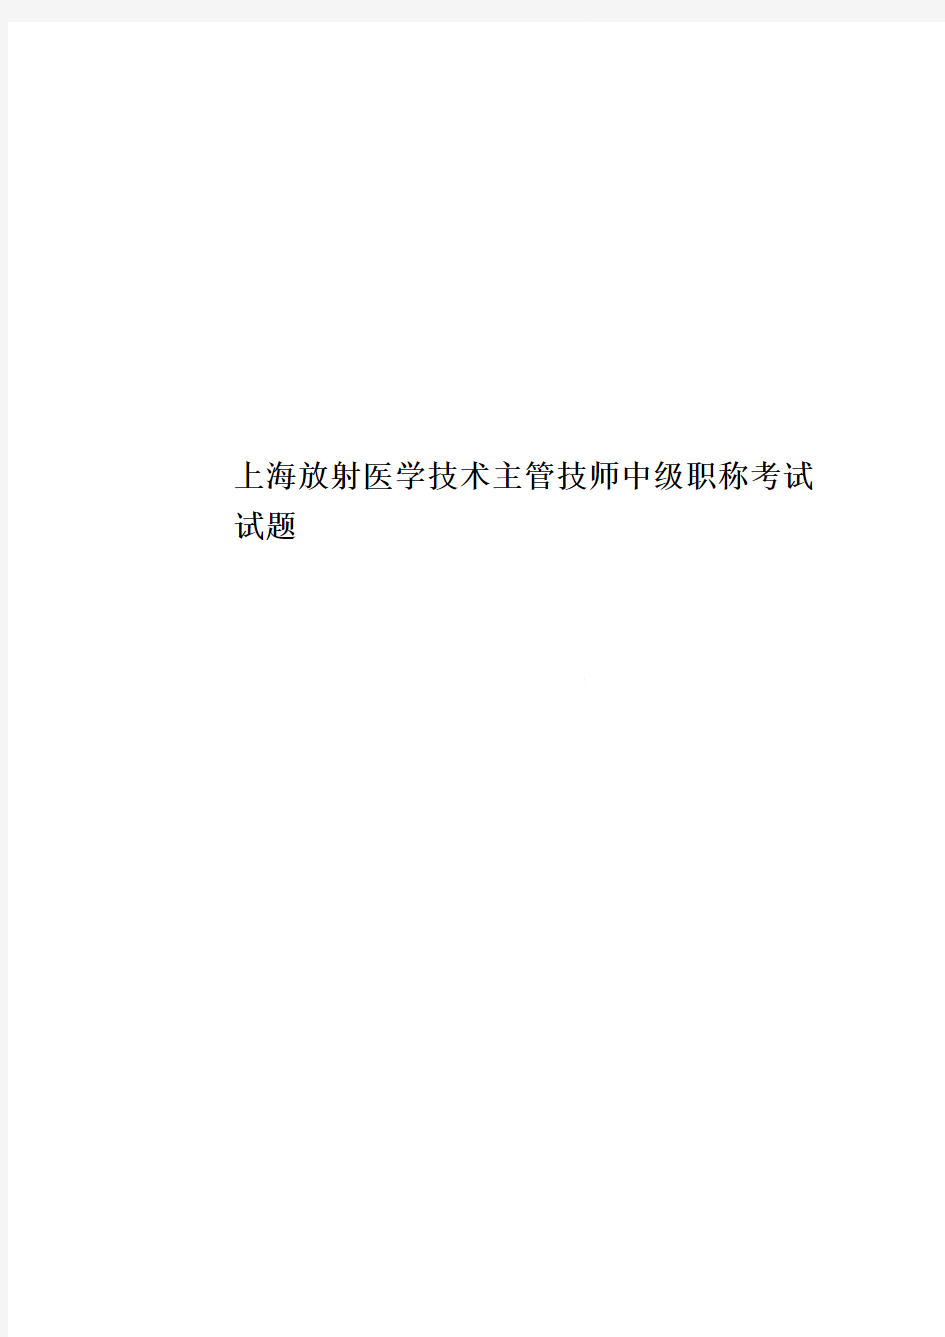 上海放射医学技术主管技师中级职称考试试题